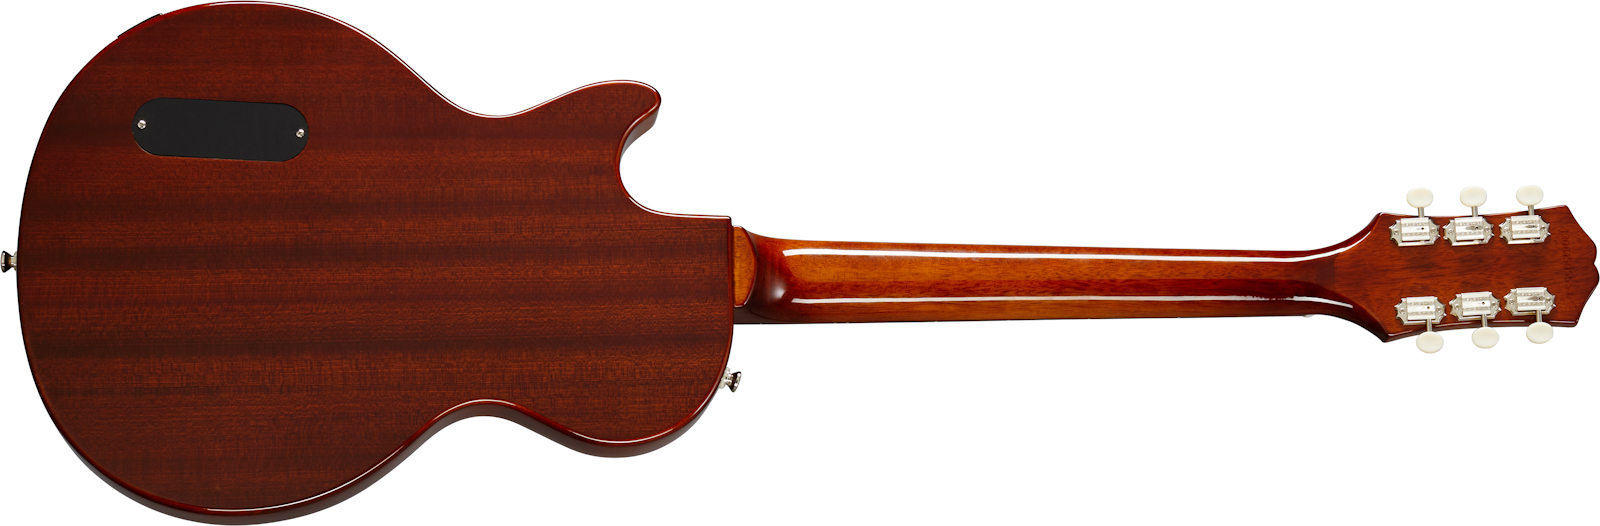 Epiphone Les Paul Junior P90 Ht Rw - Vintage Sunburst - Guitare Électrique Single Cut - Variation 1